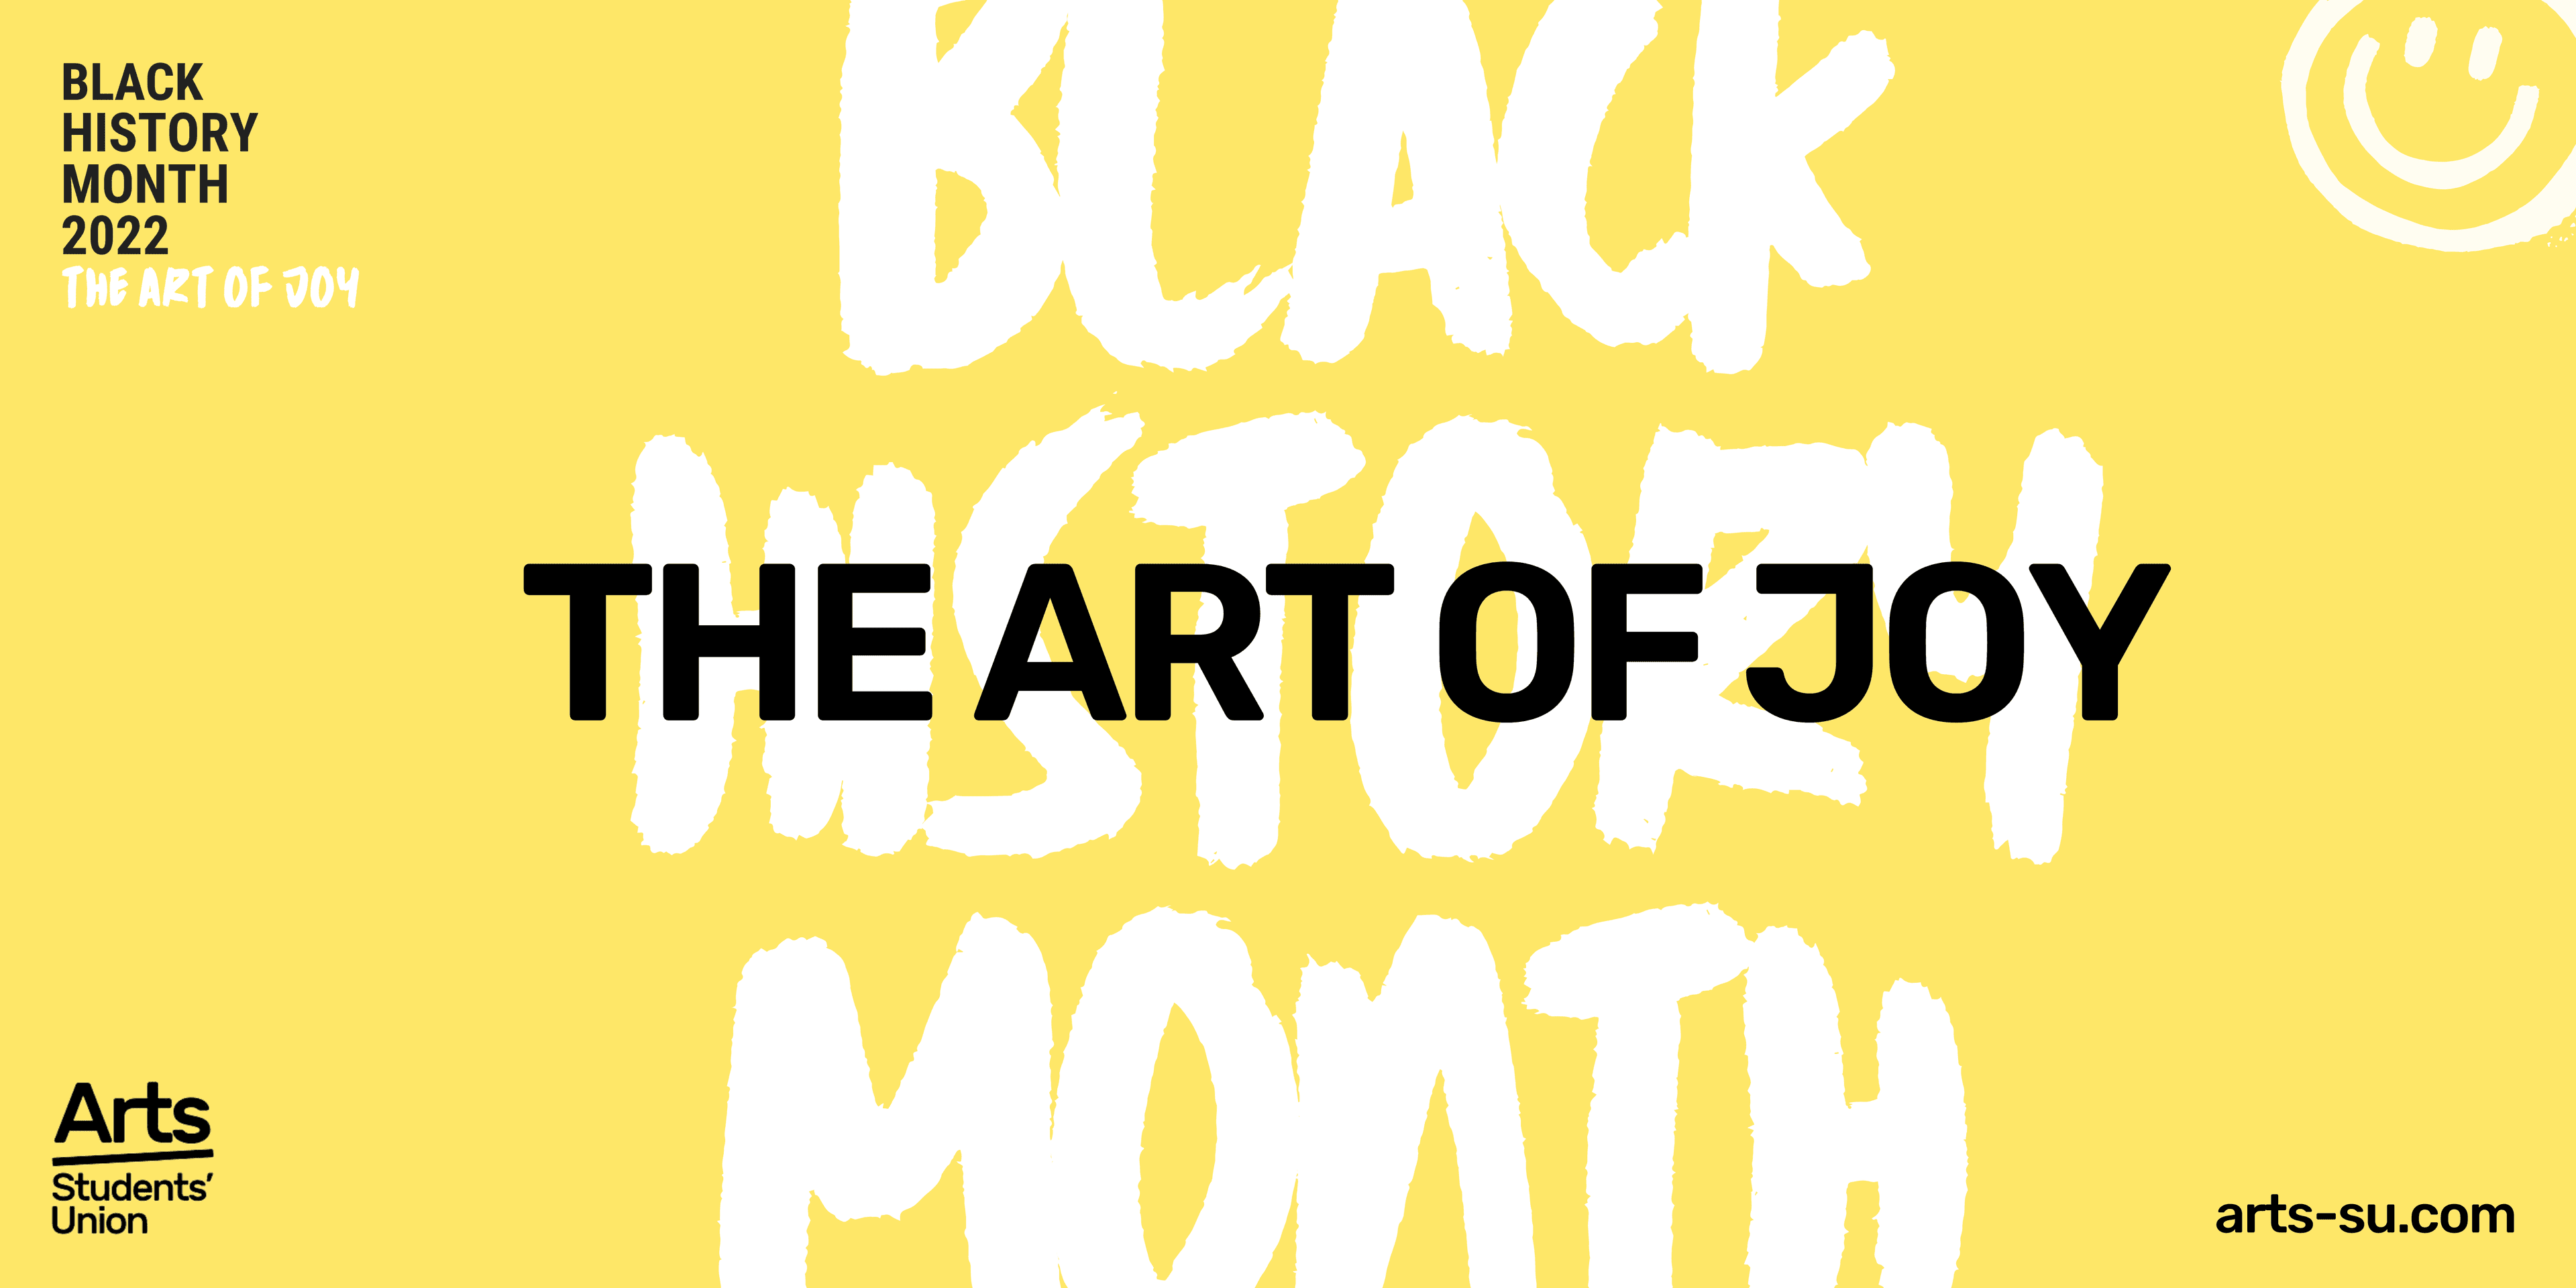 The Art of Joy Exhibition